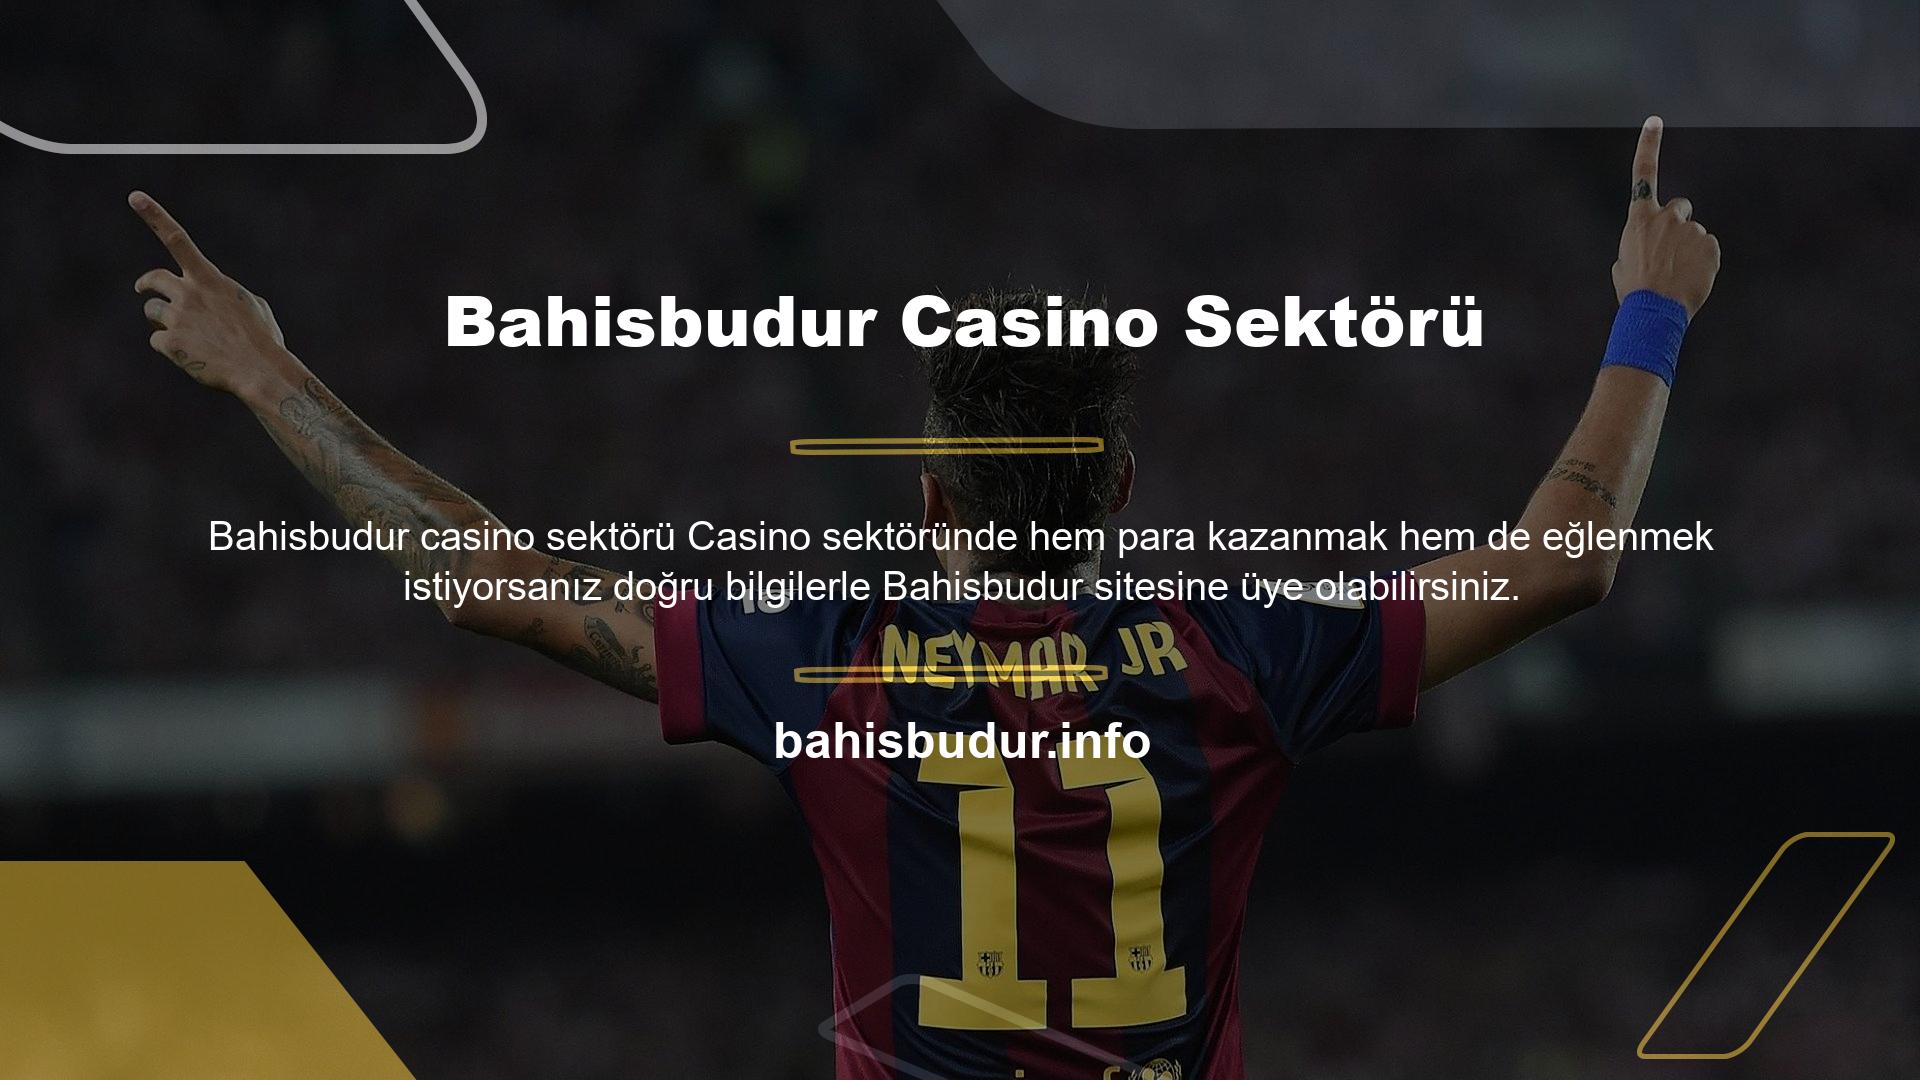 Avrupa ülkelerinde en çok kullanılan sağlayıcı olan Bahisbudur ile casino içeriğine erişmek ve casino oyunları oynamak, oyun severlere eşsiz bir keyif getiriyor